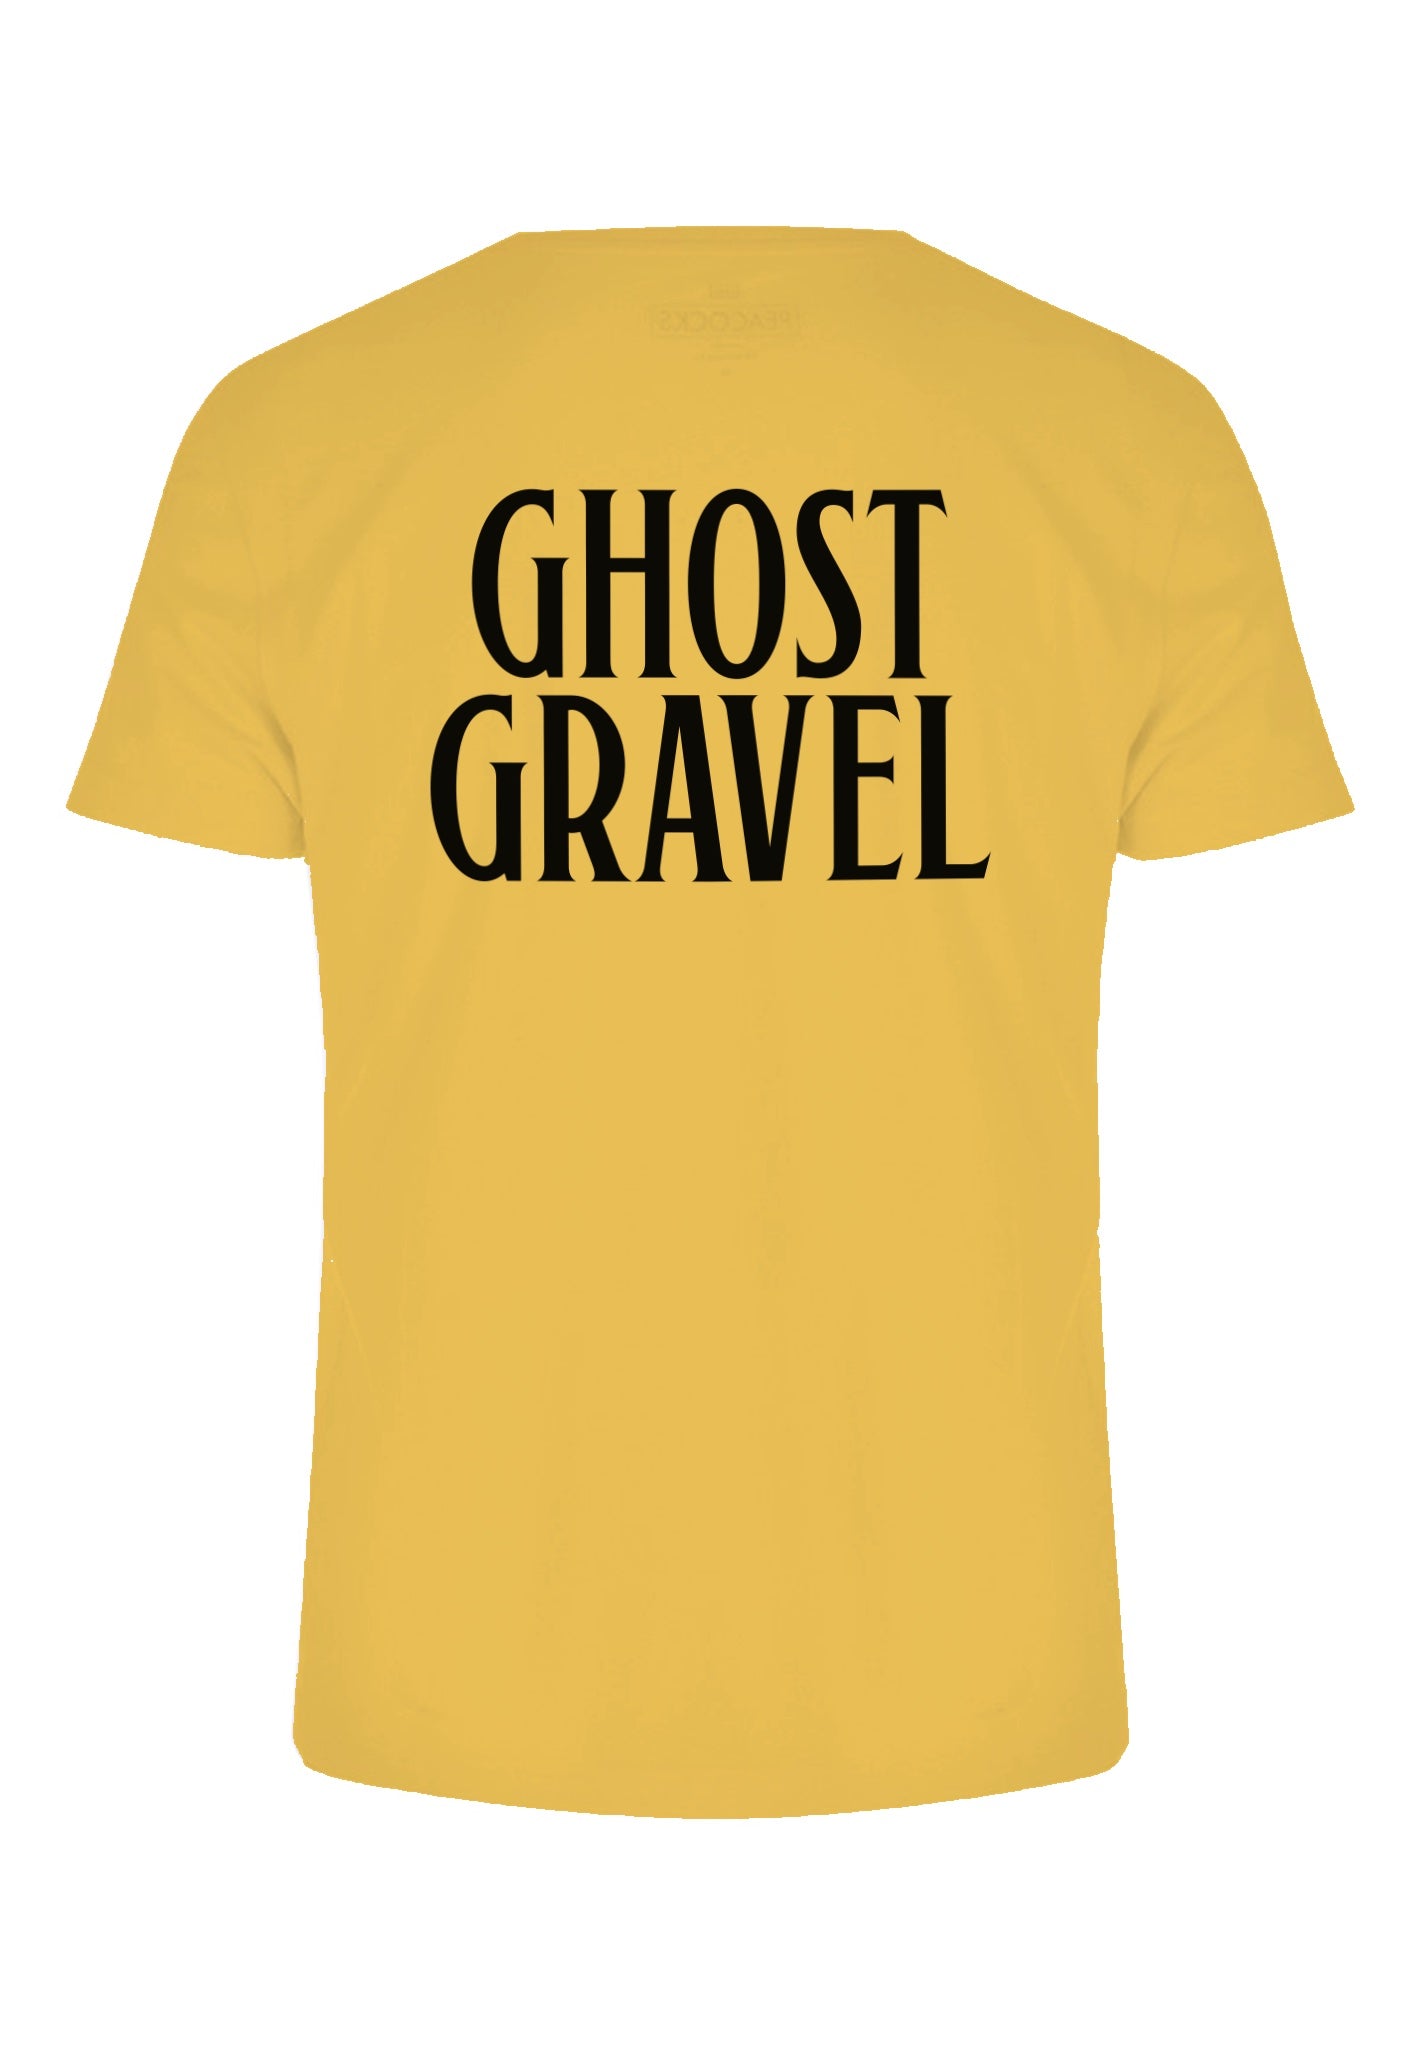 Ghost Gravel T-Shirt - Unisex